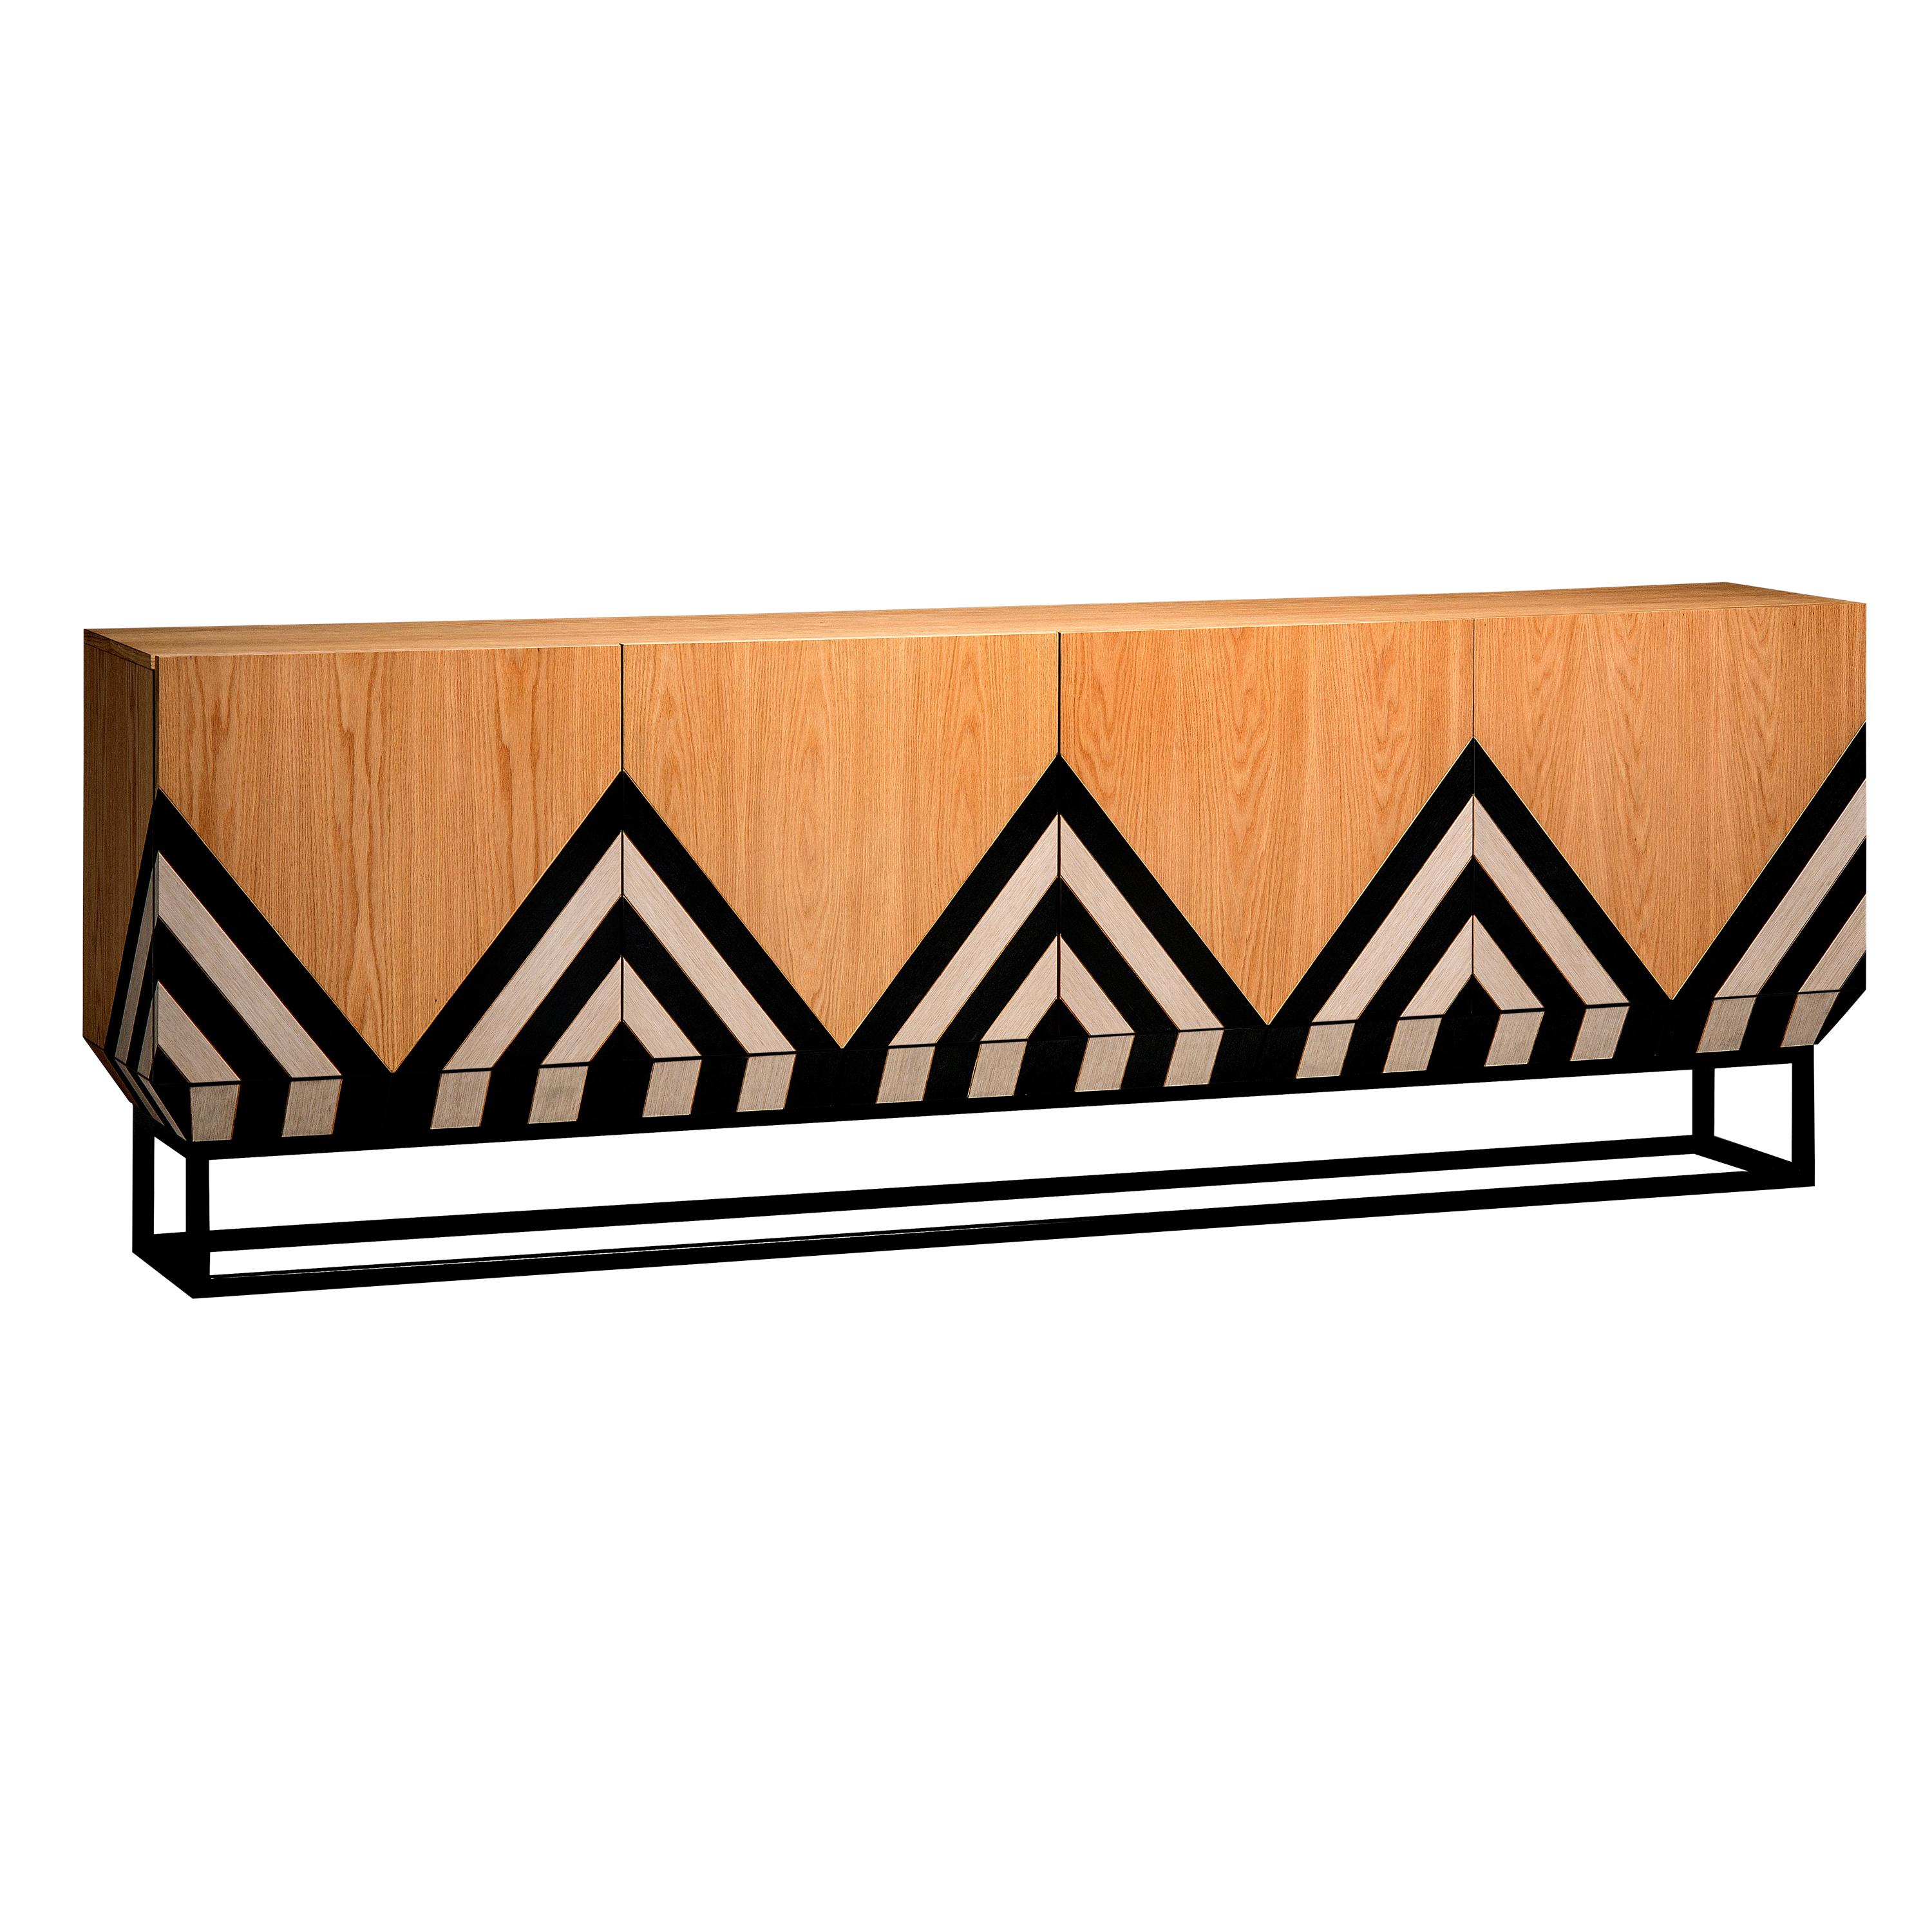 Signant parfaitement son nom, les textures et la disposition en forme de diamant des carreaux de bois gravent chaque meuble d'une esthétique tribale - une inspiration qui ne pouvait être que celle de la designer internationale Larissa Batista.